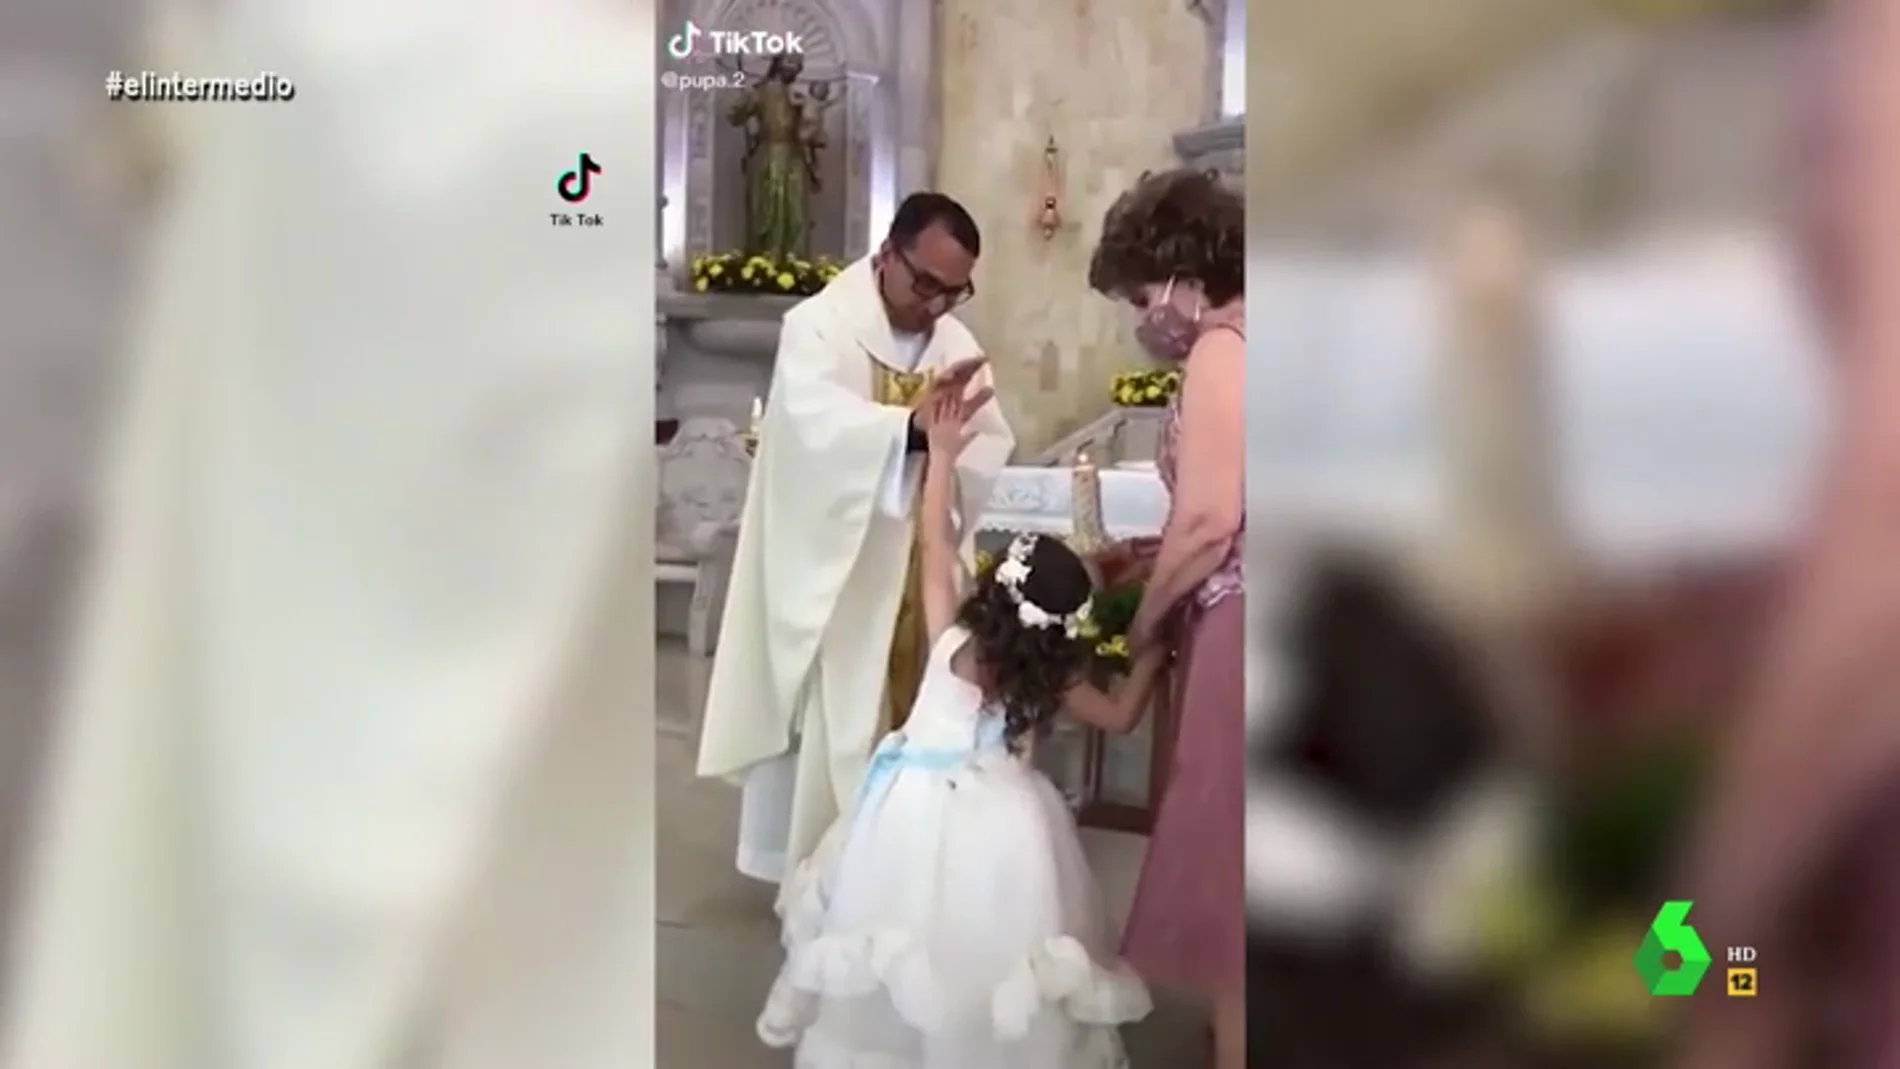 La reacción viral de una niña chocando los cinco a un cura que la intenta bendecir en plena misa